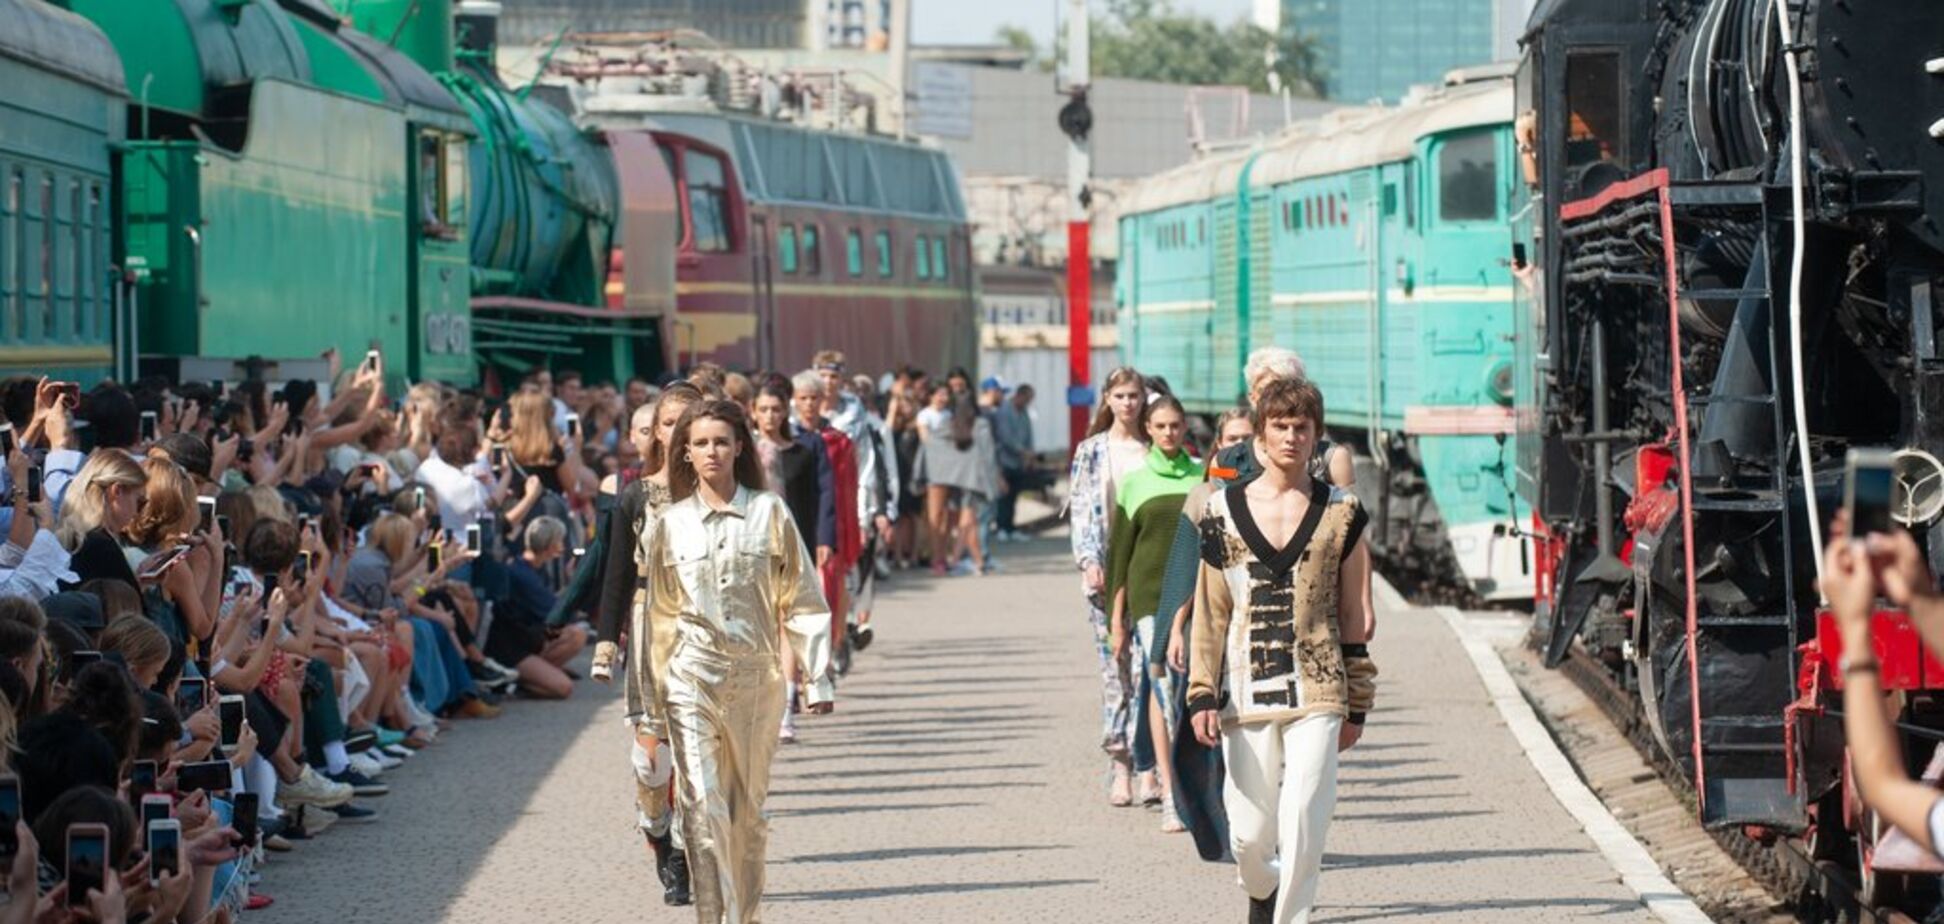 Дефиле между поездов: в Киеве устроили креативный модный показ